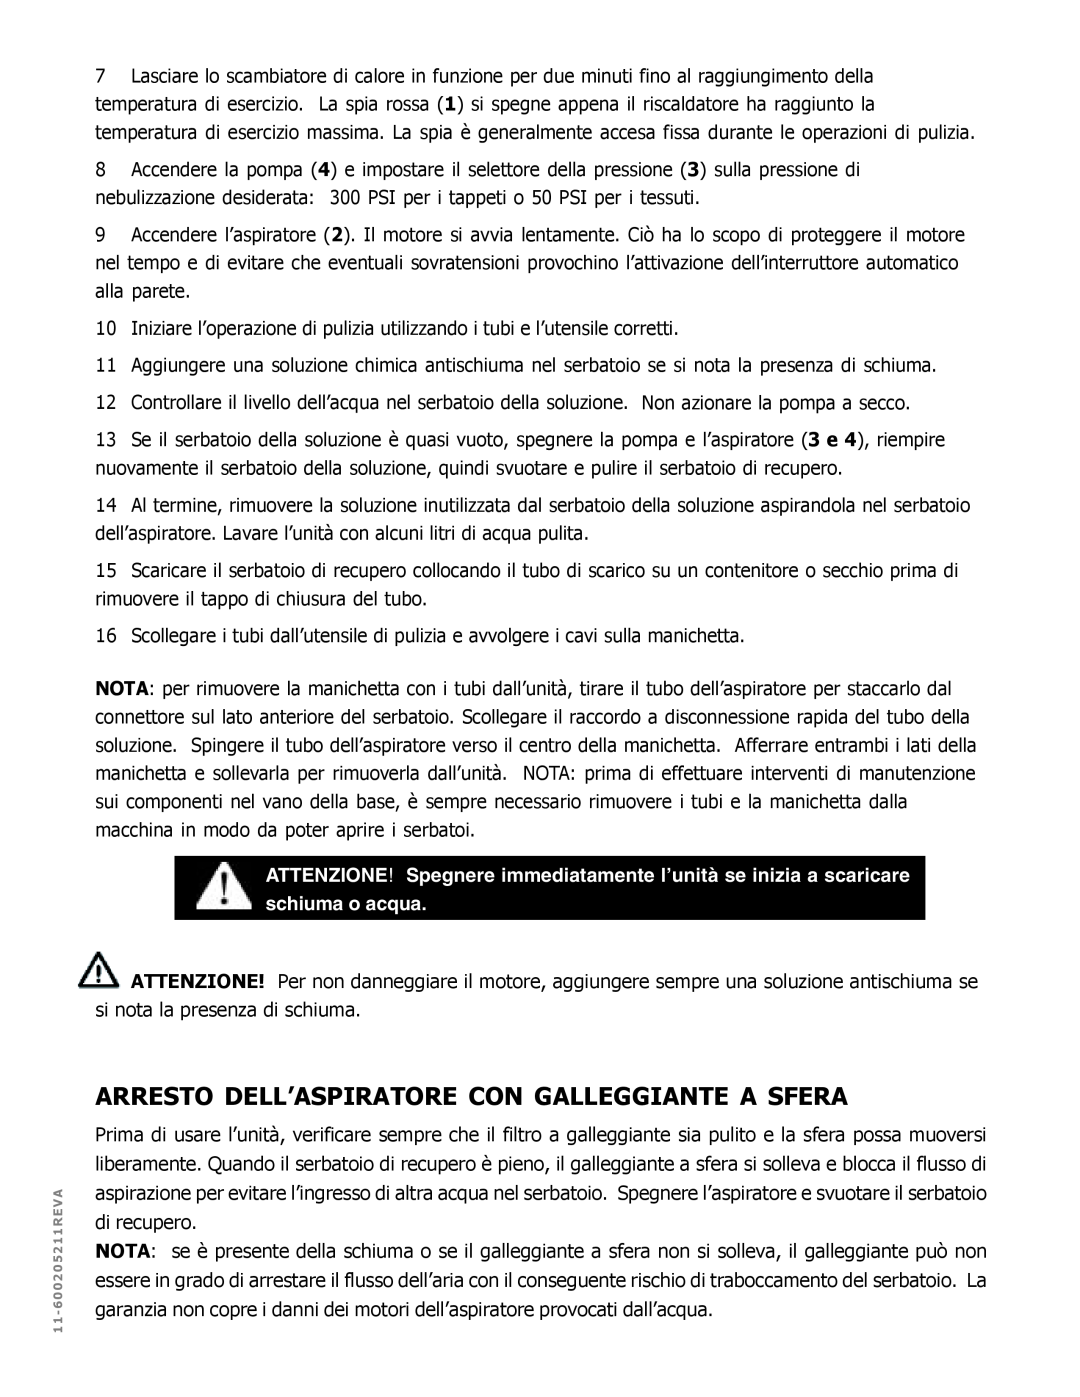 Nilfisk-ALTO MX 521 H manual Arresto Dell’Aspiratore Con Galleggiante A Sfera, schiuma o acqua 